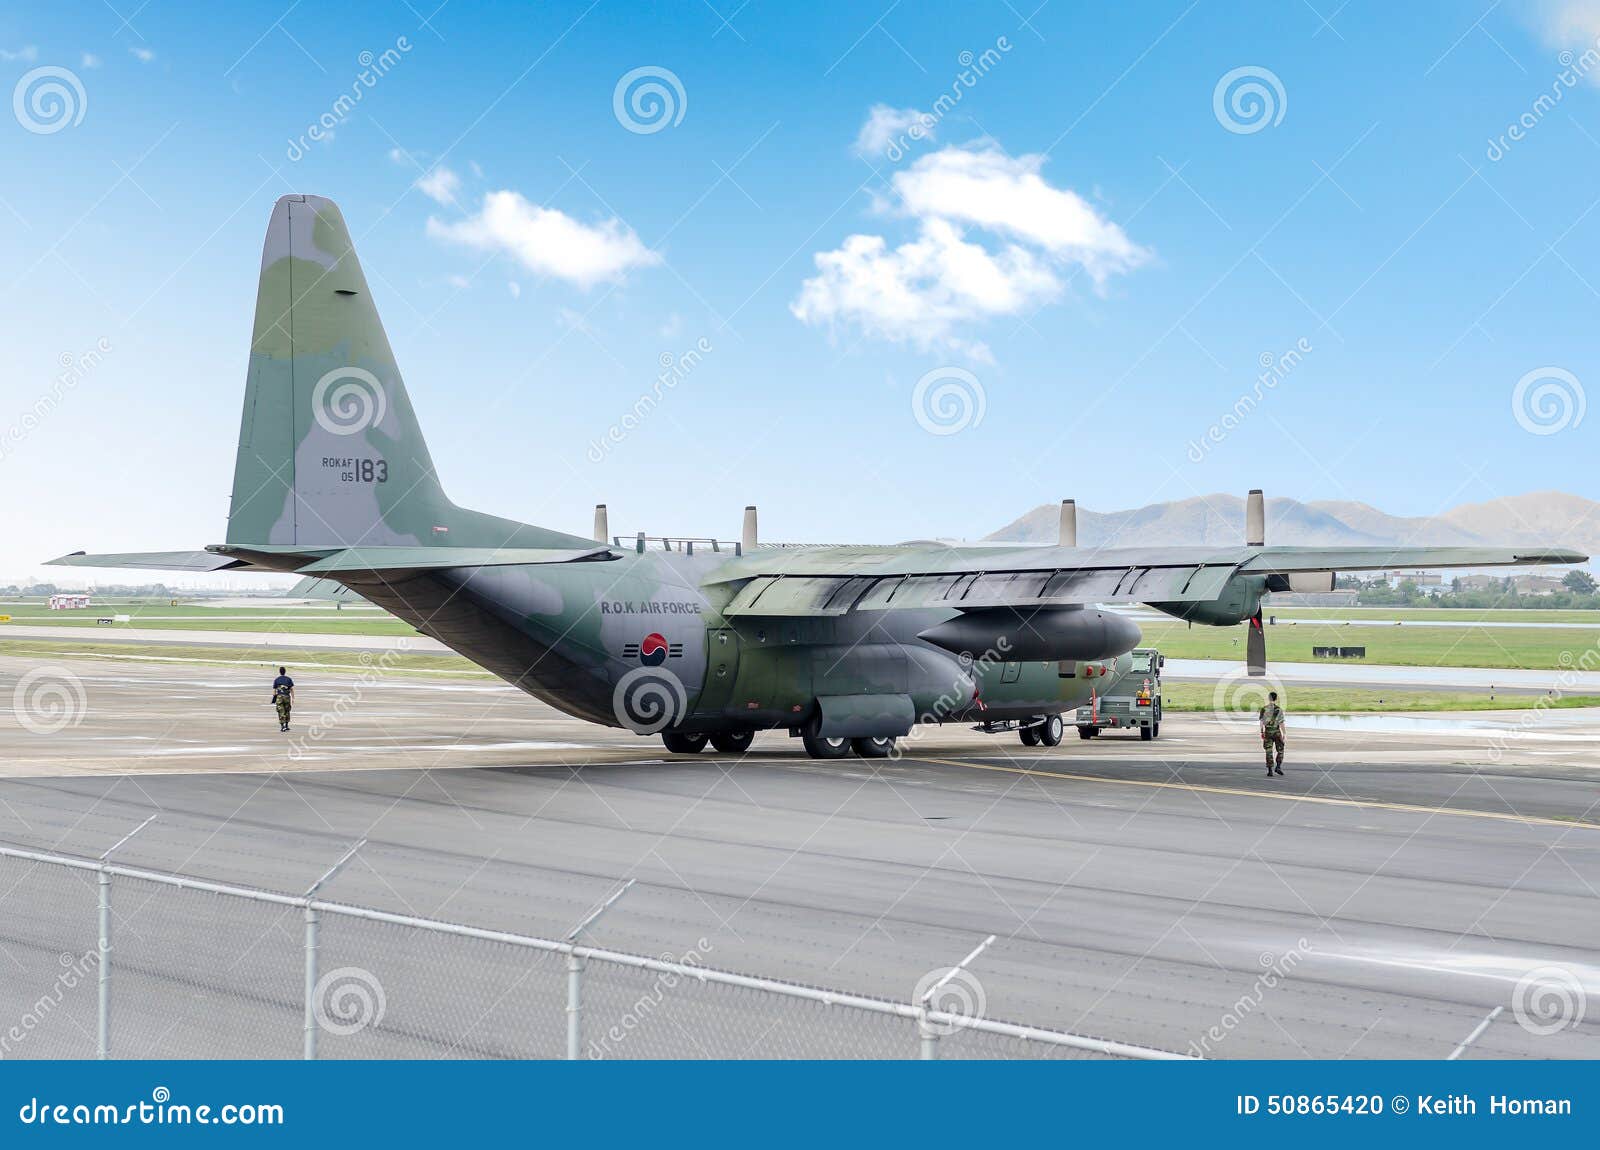 C-130, das geschleppt wird. Busan, Südkorea - 22. Juni 2011: Ein südkoreanisches C-130, das nachdem ein Maschinentest geschleppt wird, durchgeführt worden ist